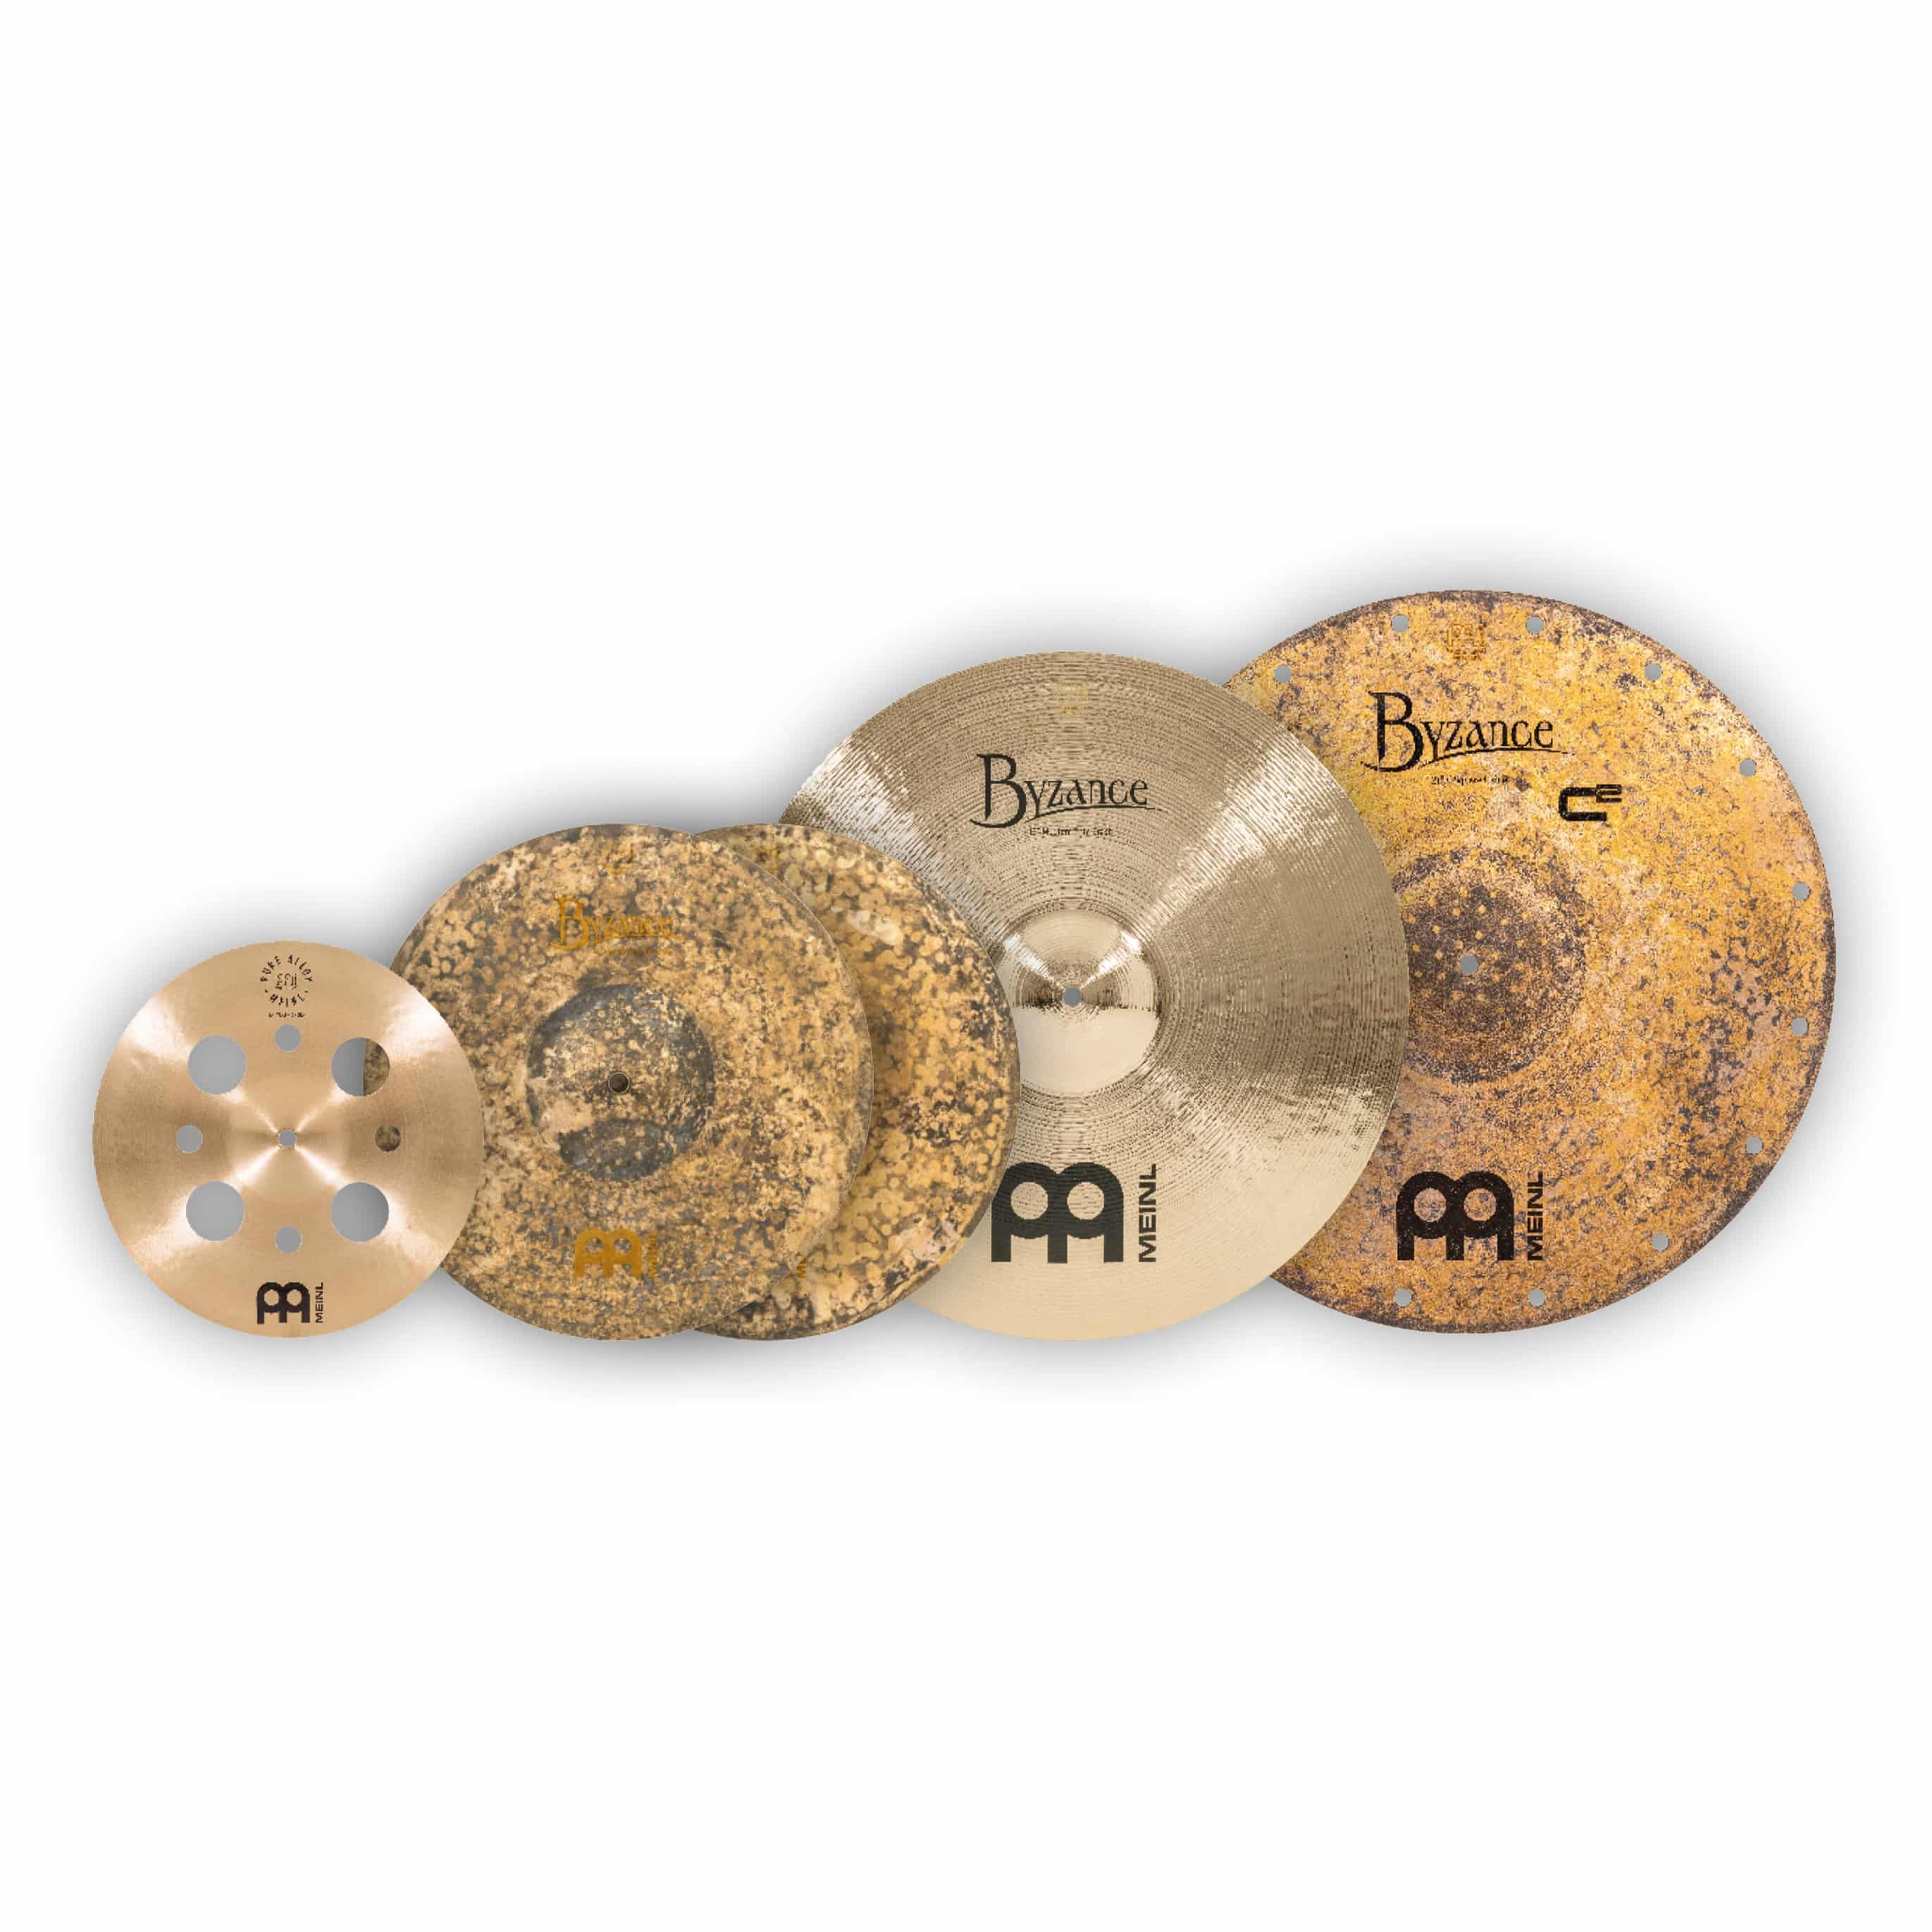 Meinl Cymbals A-CS5 - Byzance Artist's Choice Cymbal Set: Chris Coleman 1